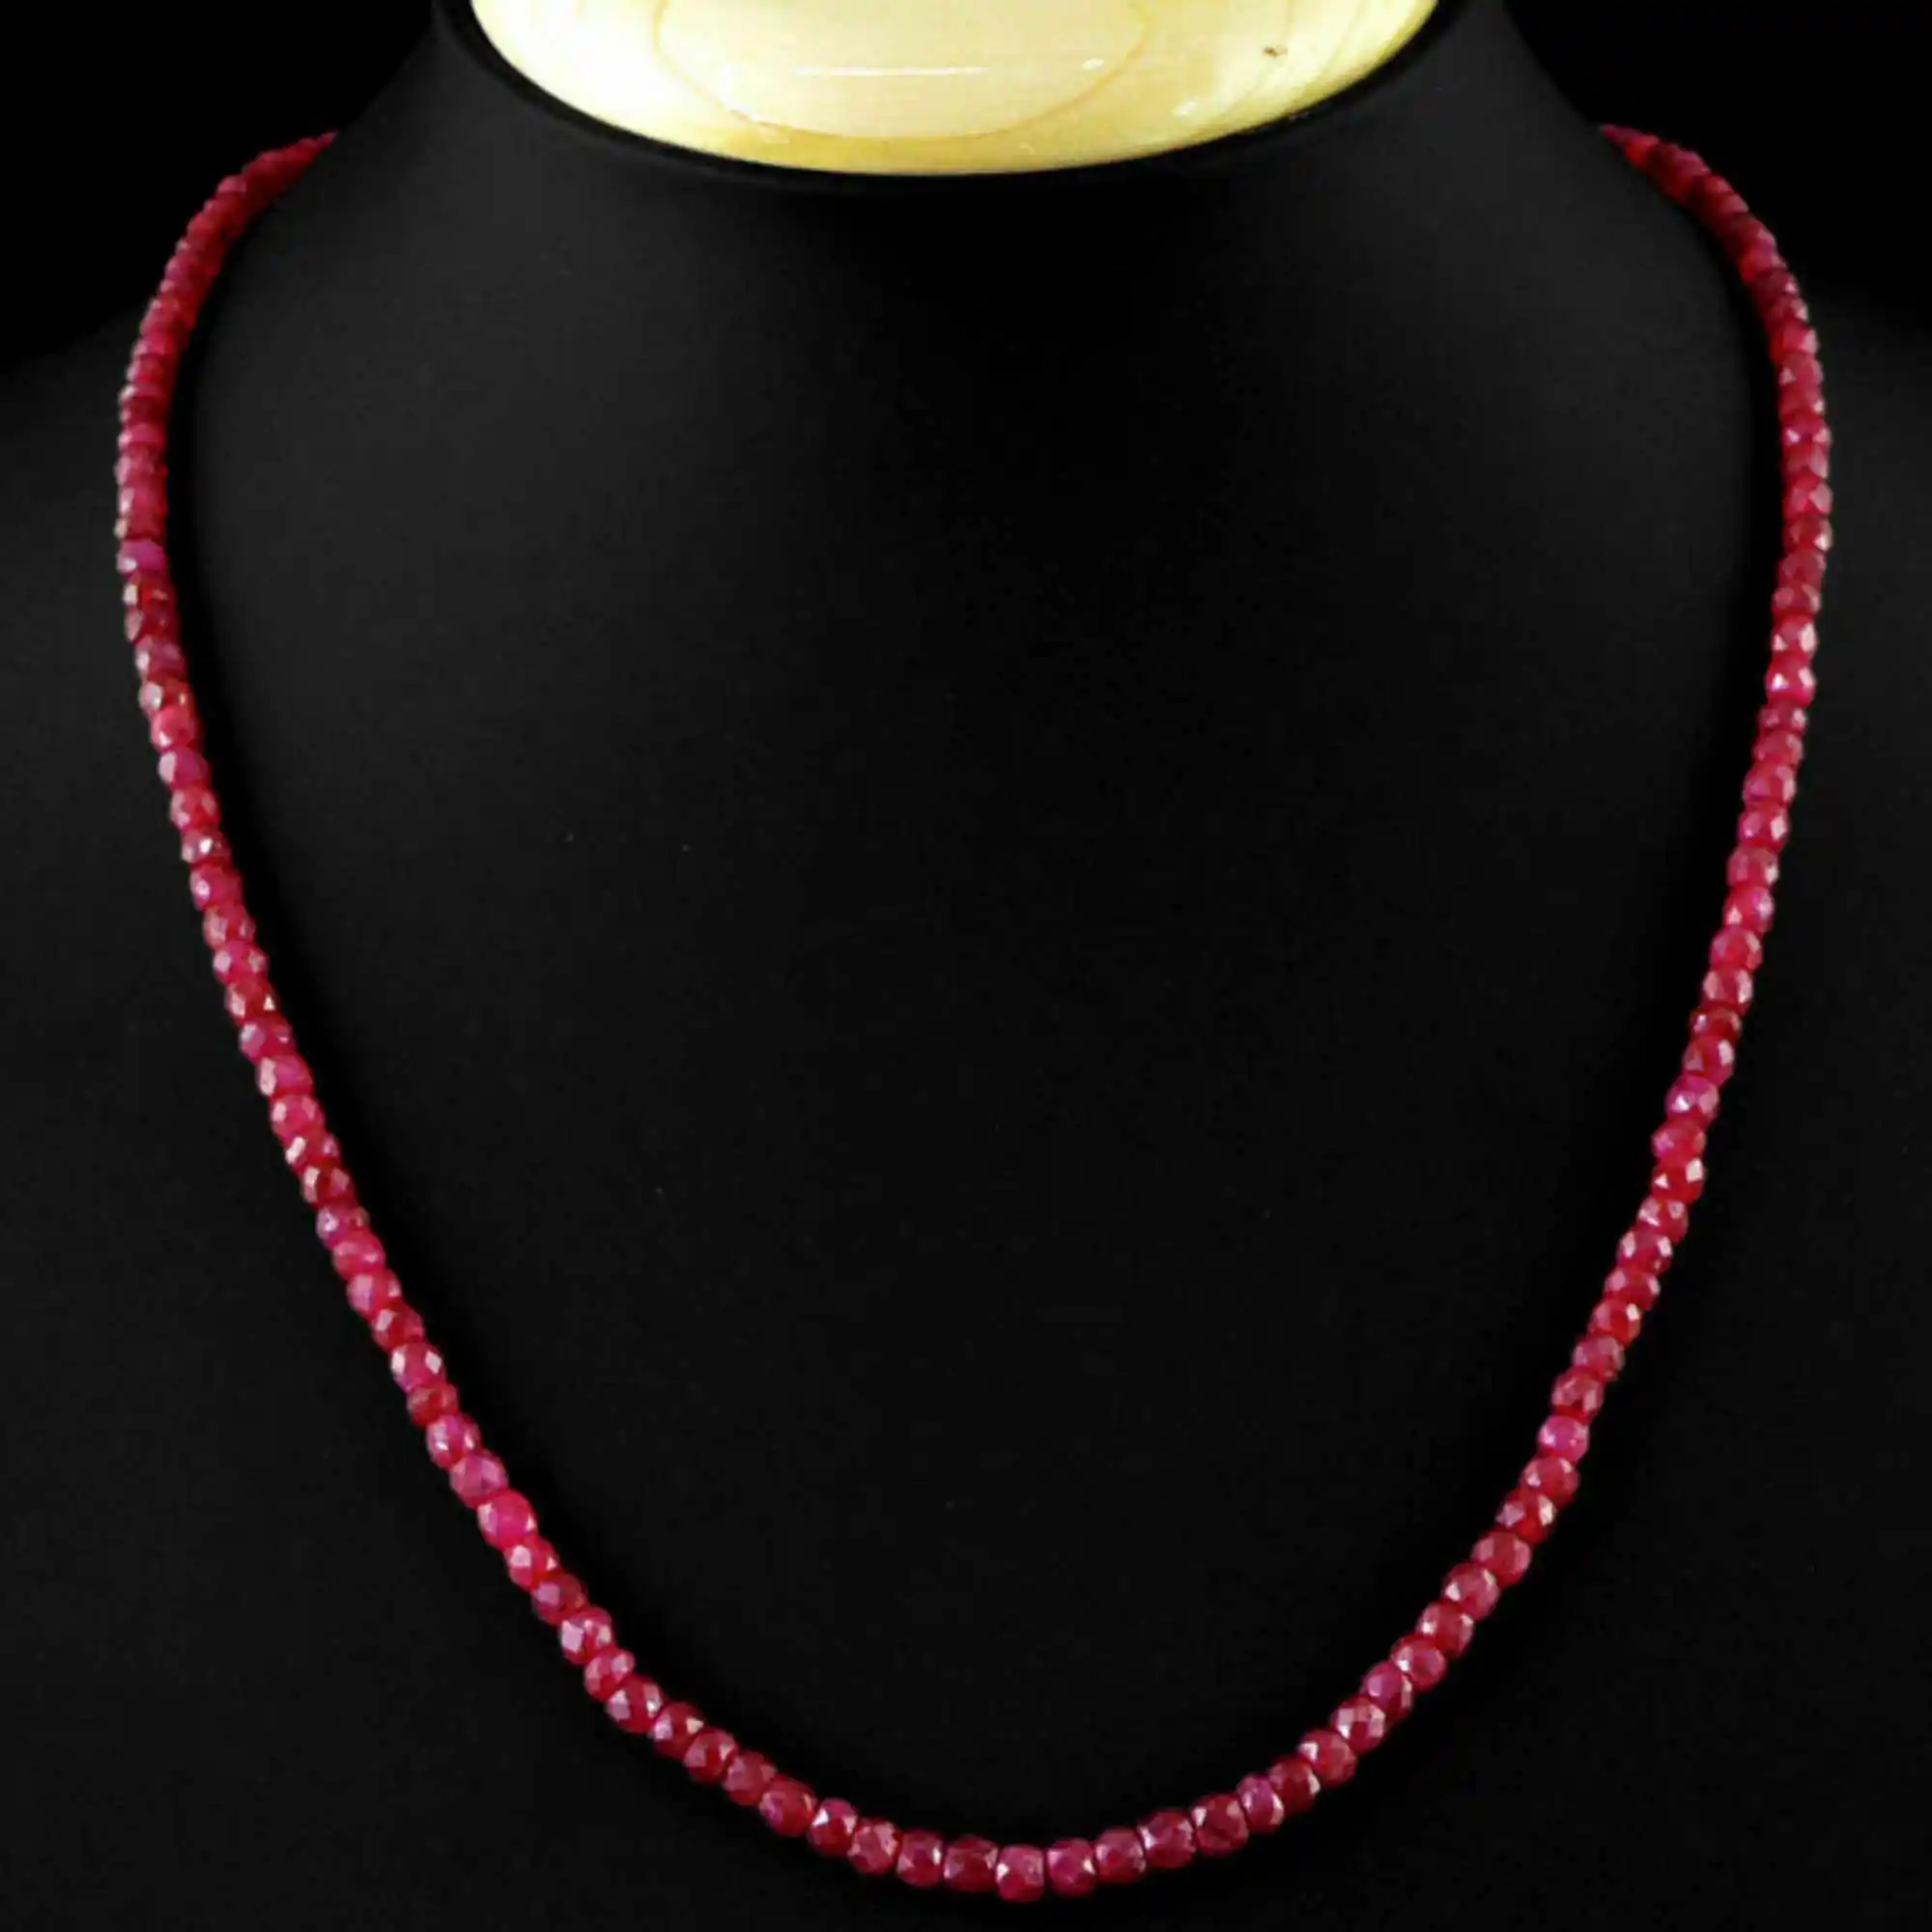 2x4 мм натуральный бразильский красный рубин ожерелье из Буса из драгоценного камня 18 дюймов для вечерние серьги-гвоздики на День матери подарок Ms классический модный красивый